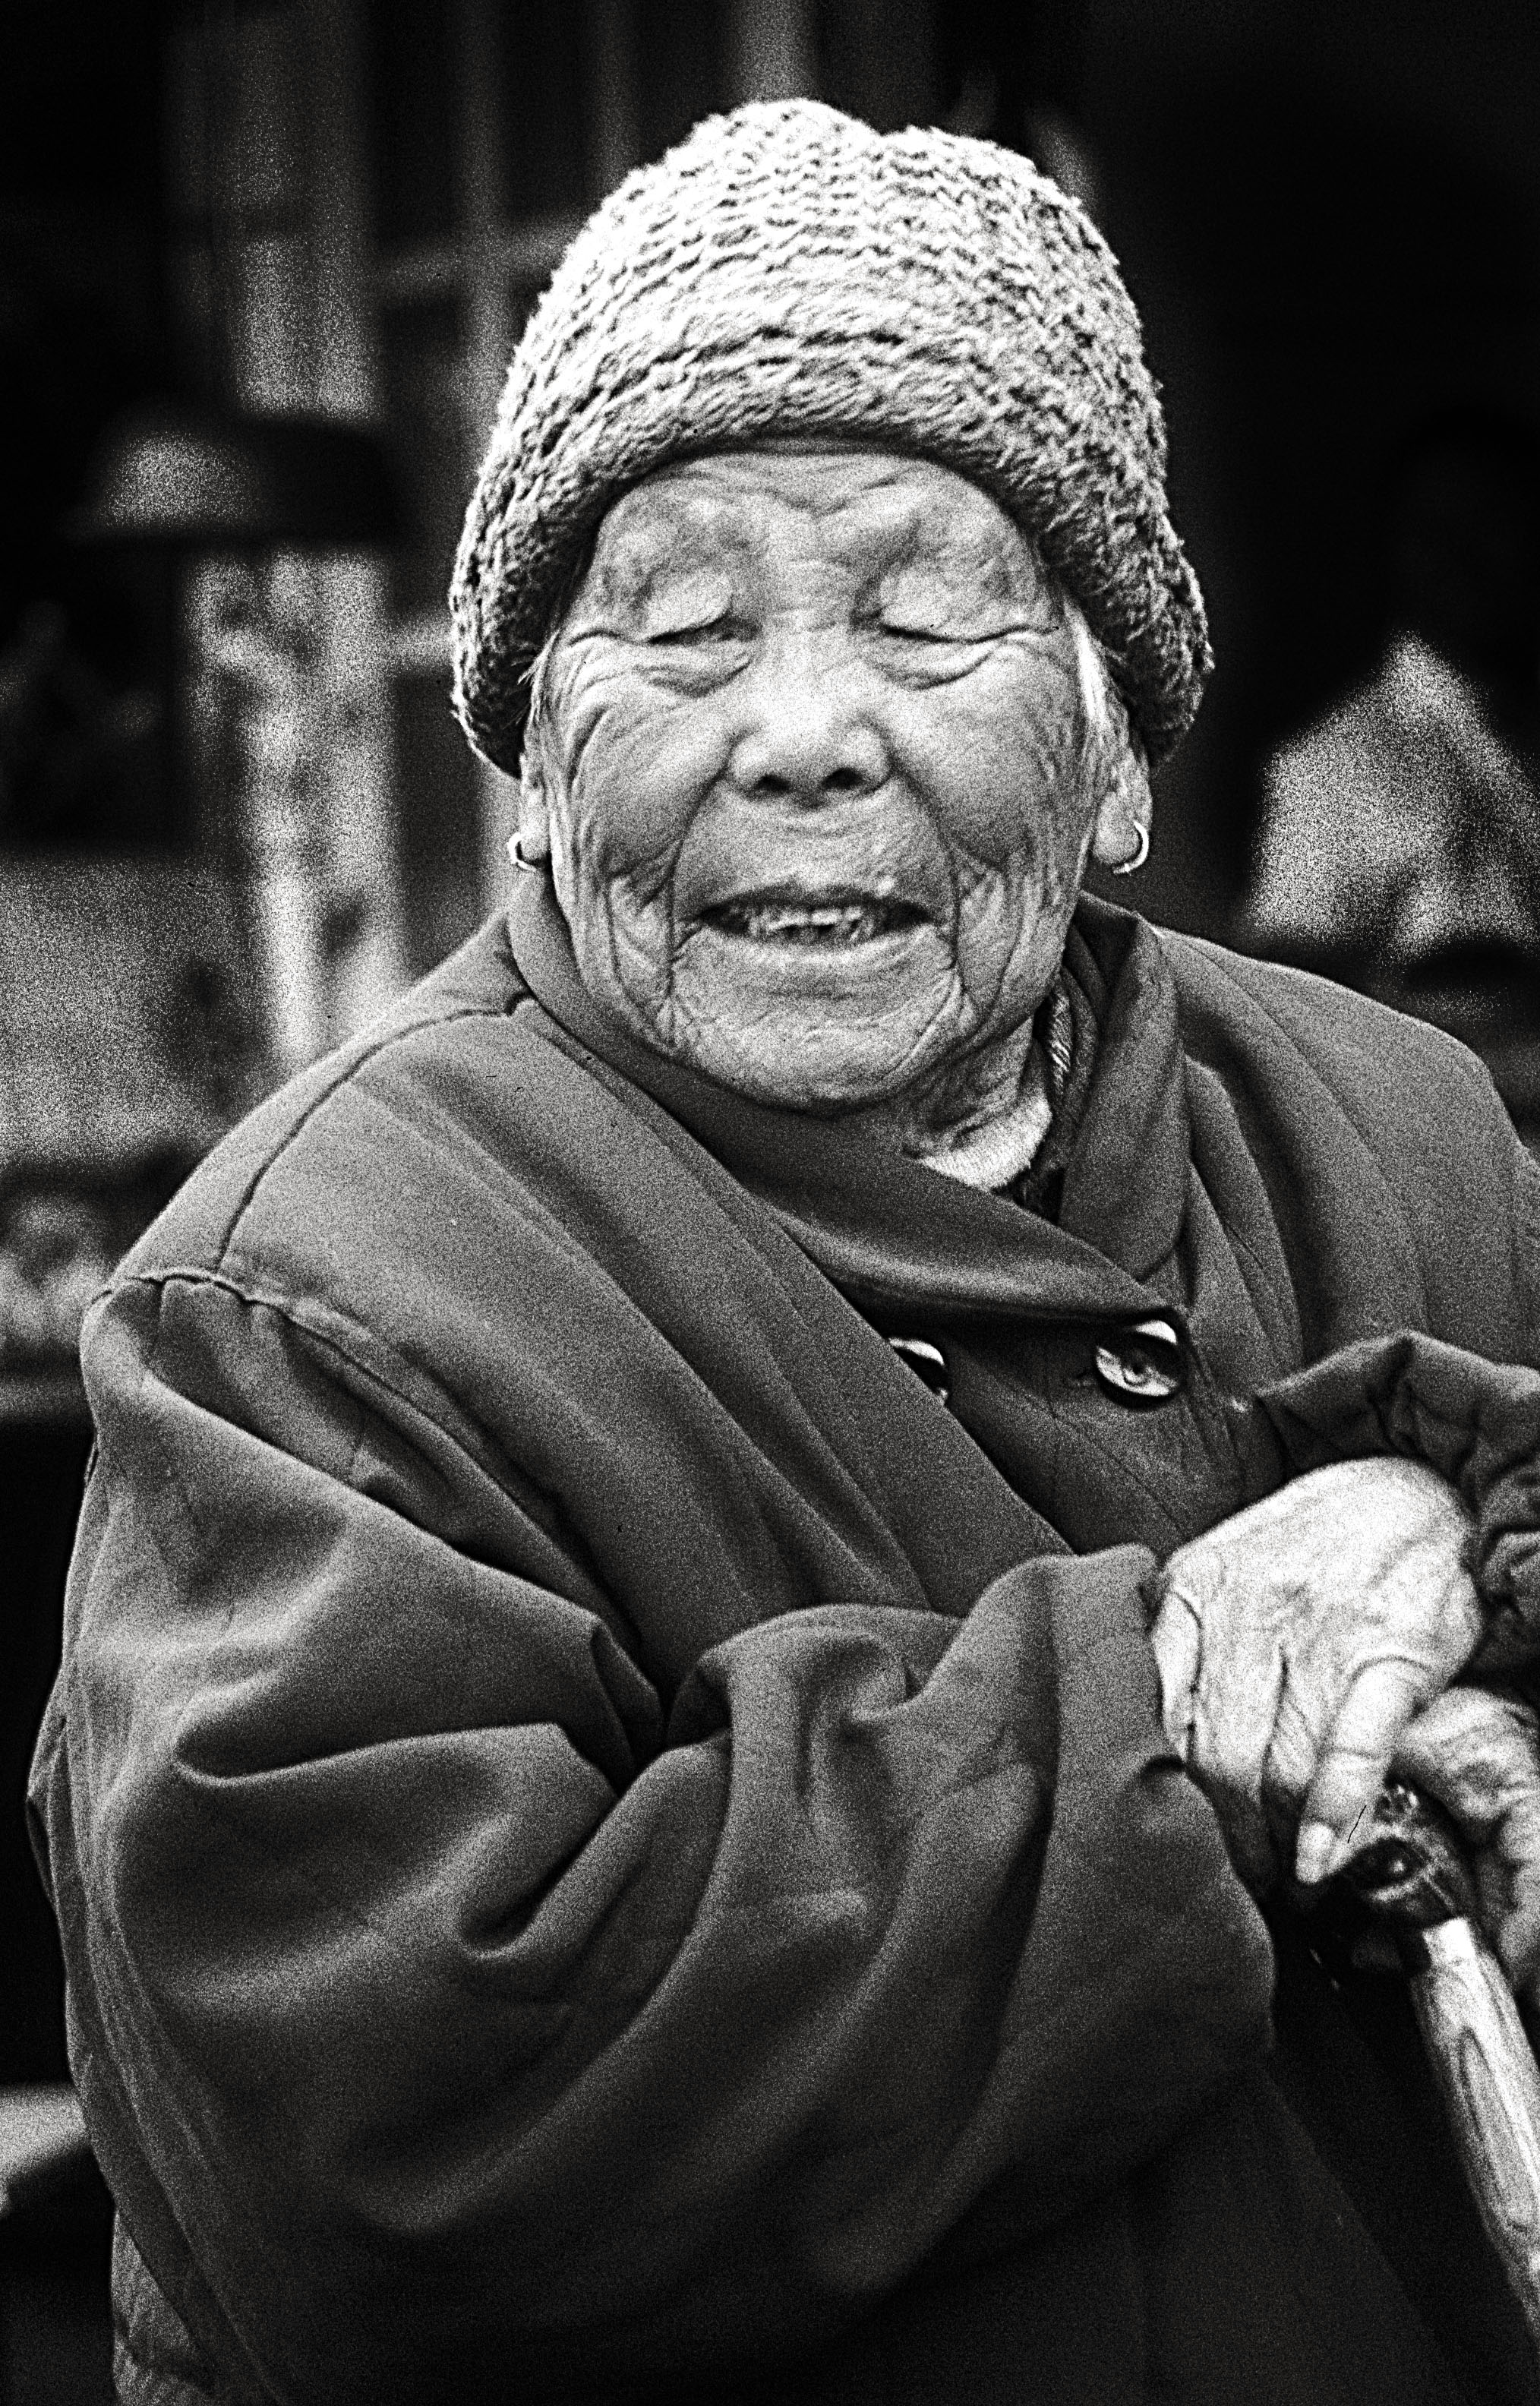 Oldlady, Off Dongjiadu, Shanghai 2004